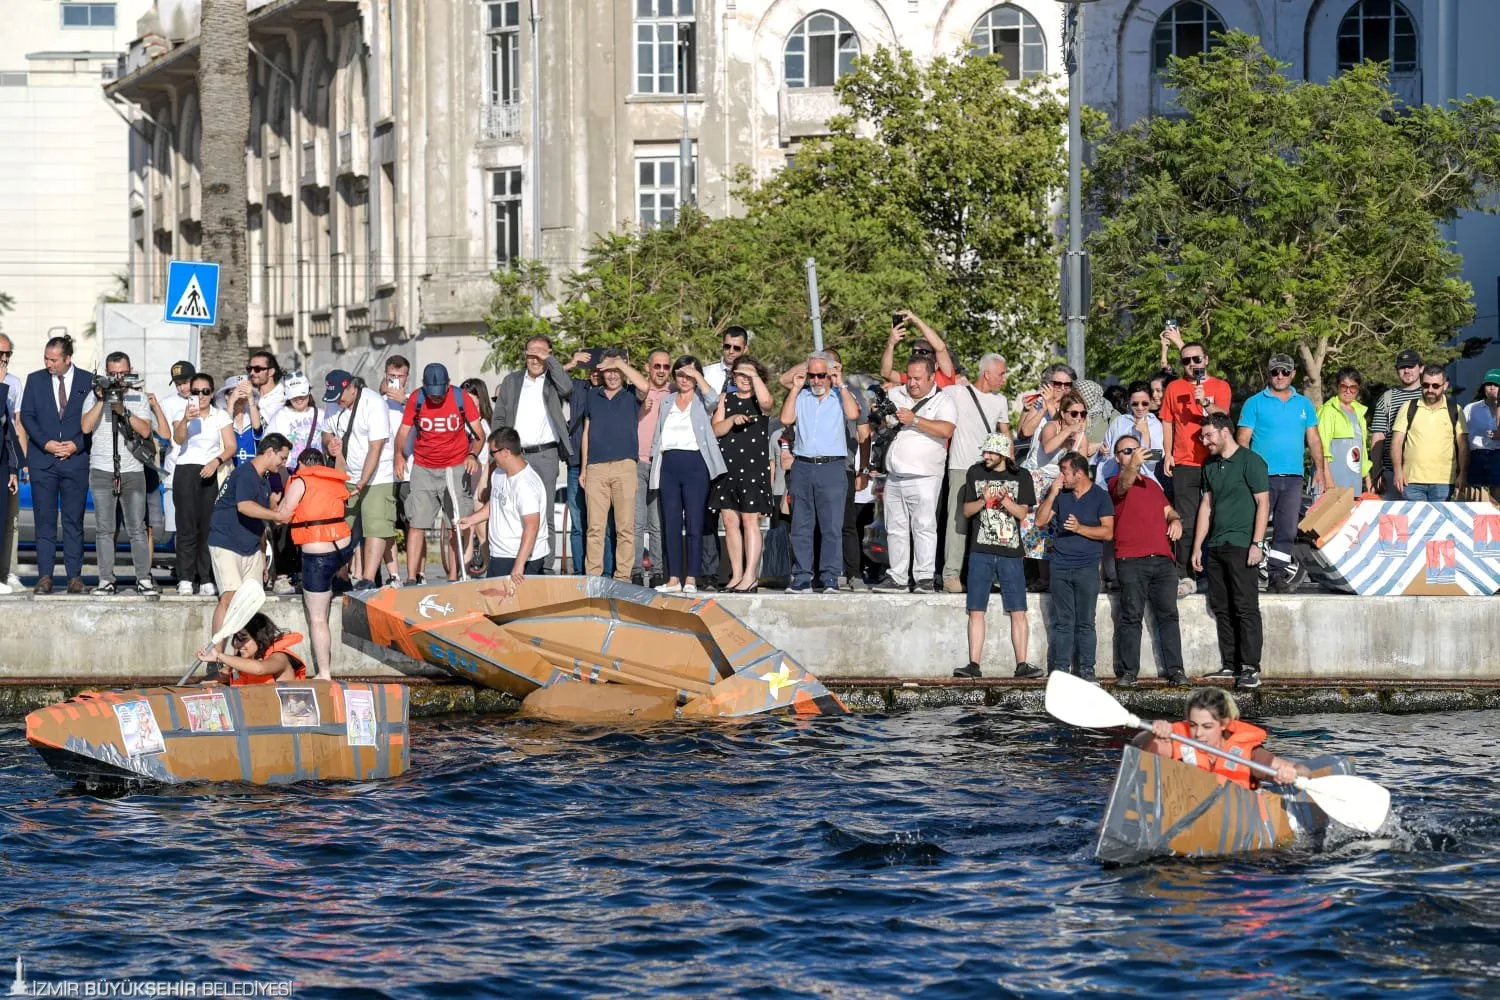 İzmir Büyükşehir Belediyesi Başkan Vekili Dr. Zafer Levent Yıldır'ın da katıldığı 16. Geleneksel Kartondan Tekneler Yarışması'nda kıyasıya mücadele yaşandı.